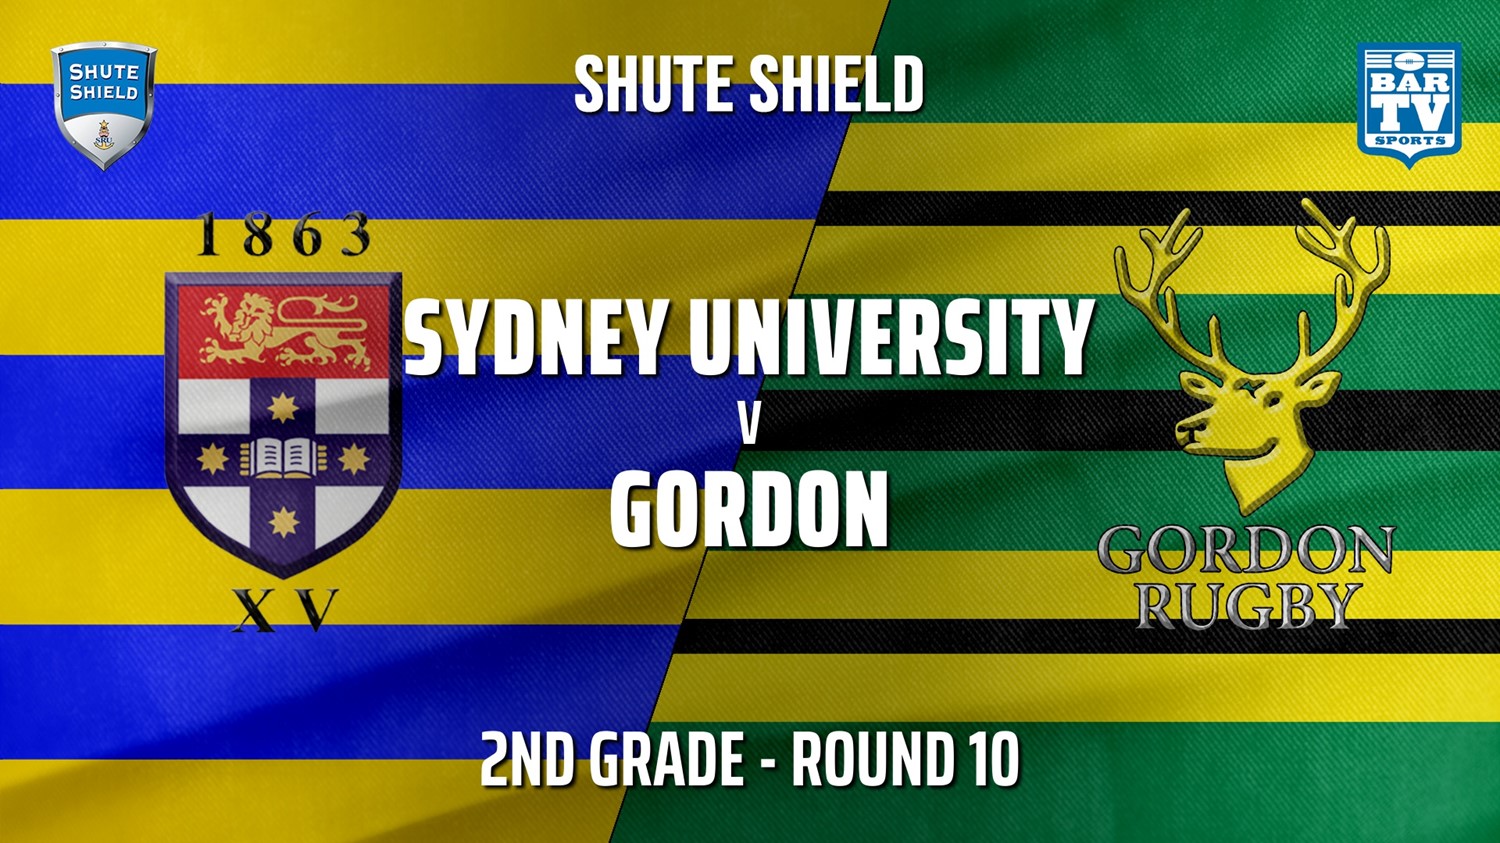 210619-Shute Shield Round 10 - 2nd Grade - Sydney University v Gordon Minigame Slate Image